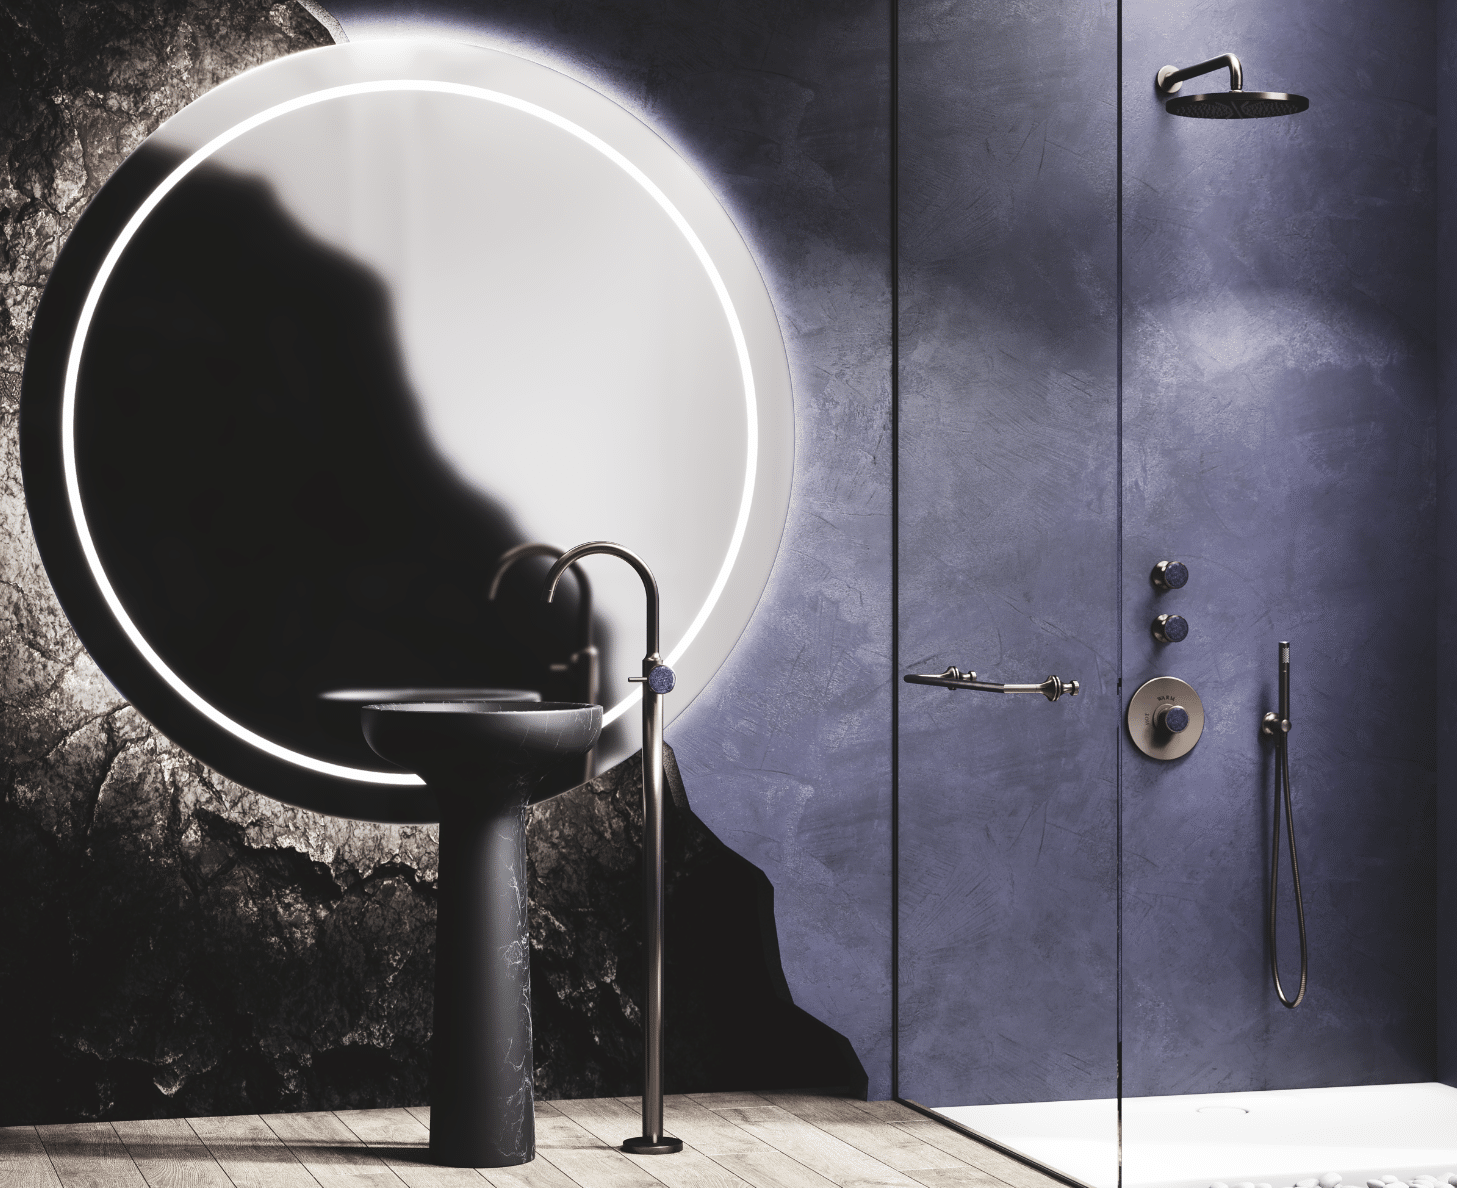 Ästhetik ist Funktion – So könnte die Maxime des Designers Oliver Jörger lauten. Außergewöhnlich ausdrucksstark präsentiert sich die neue Badinspiration mit „Valencia“ in Nerz matt und blauem Aventurin. – Das Leben ist schöner mit Jörger Design.